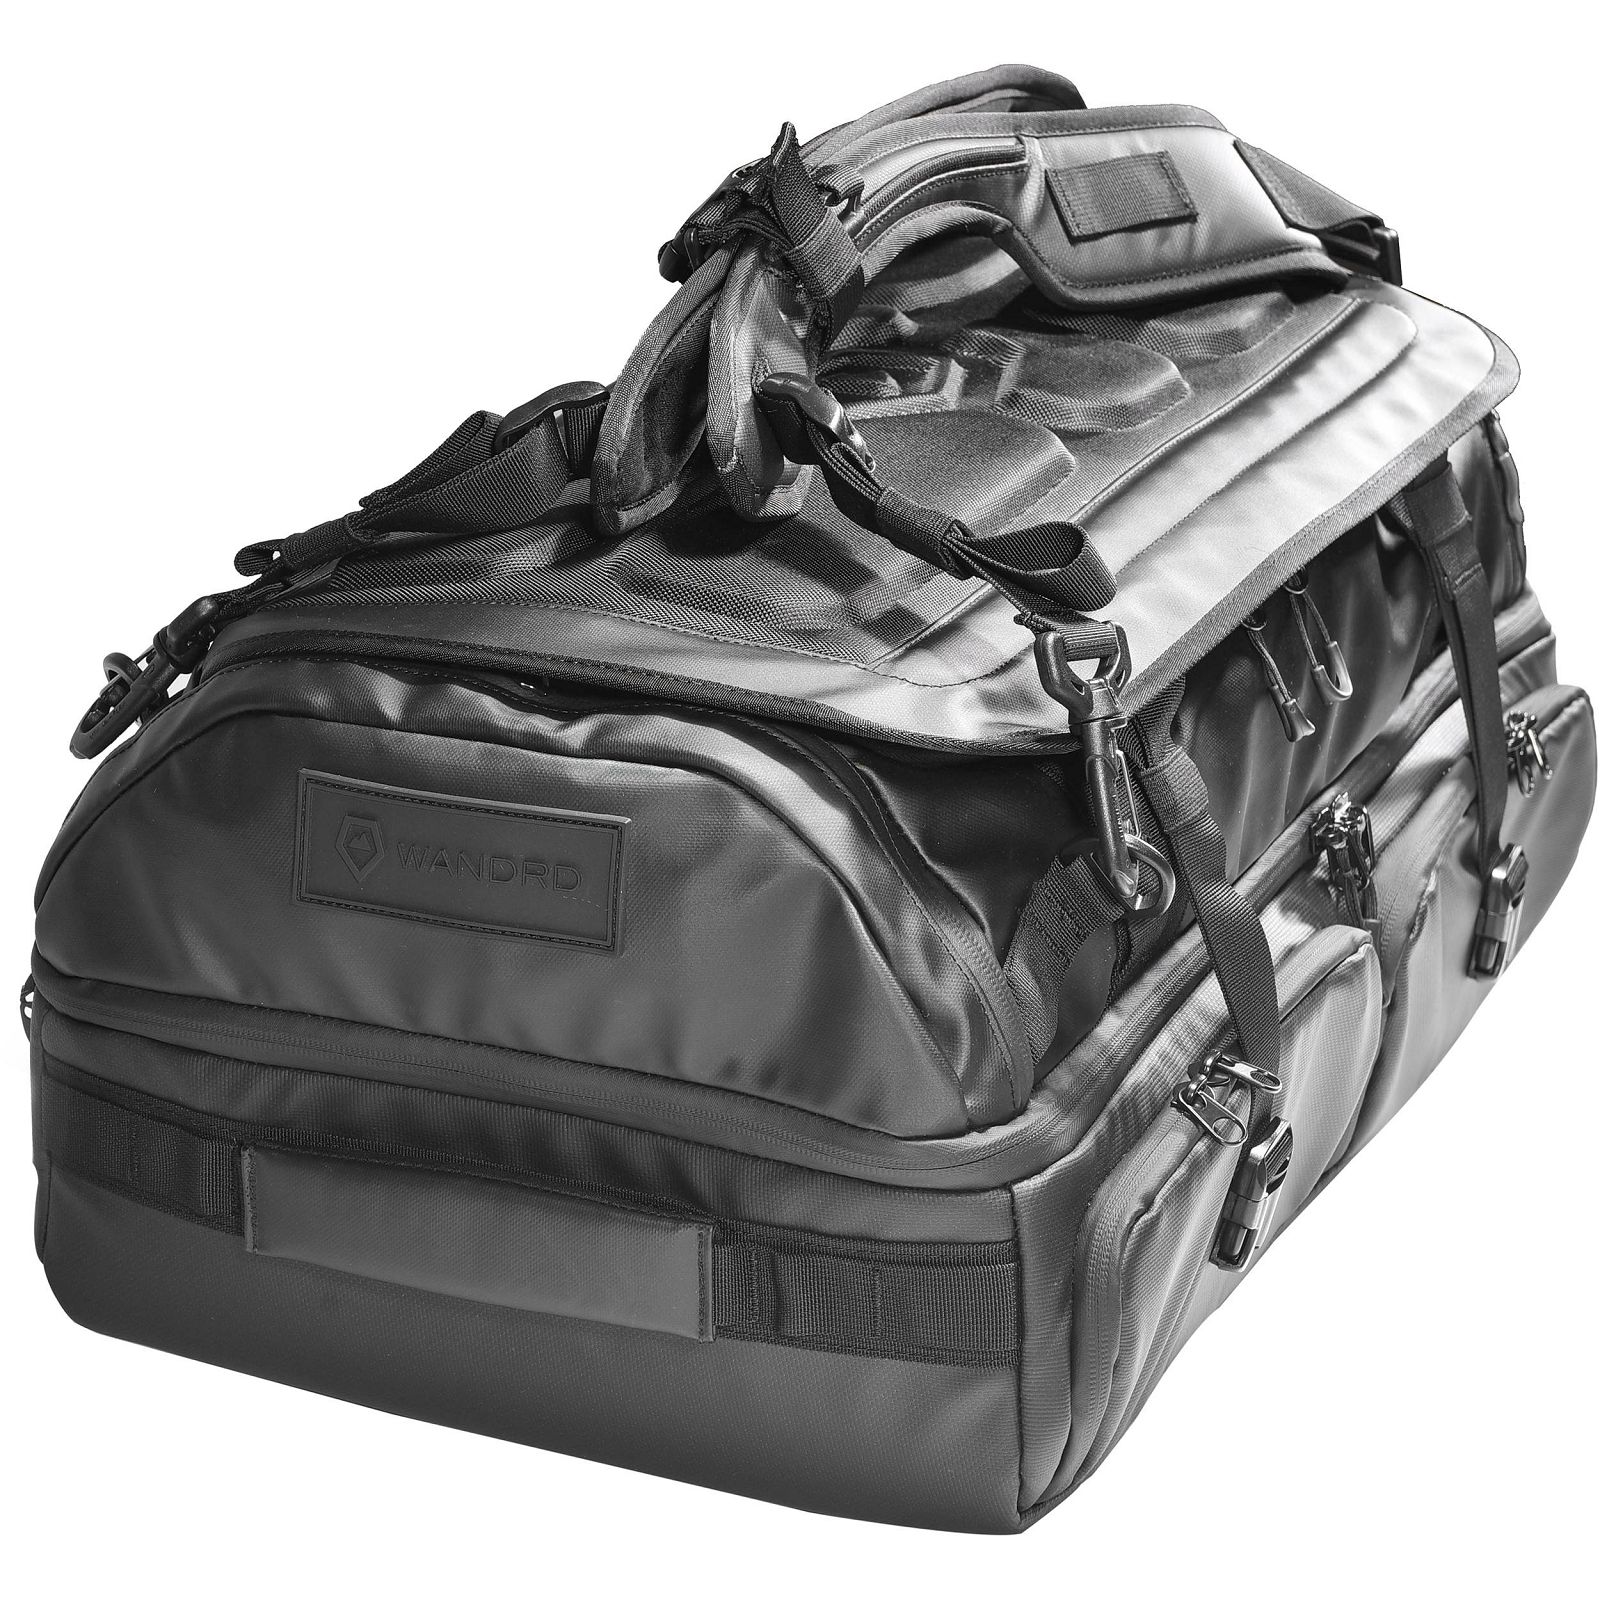 Wandrd Hexad Access Duffel 45l Black putni ruksak torba za foto opremu